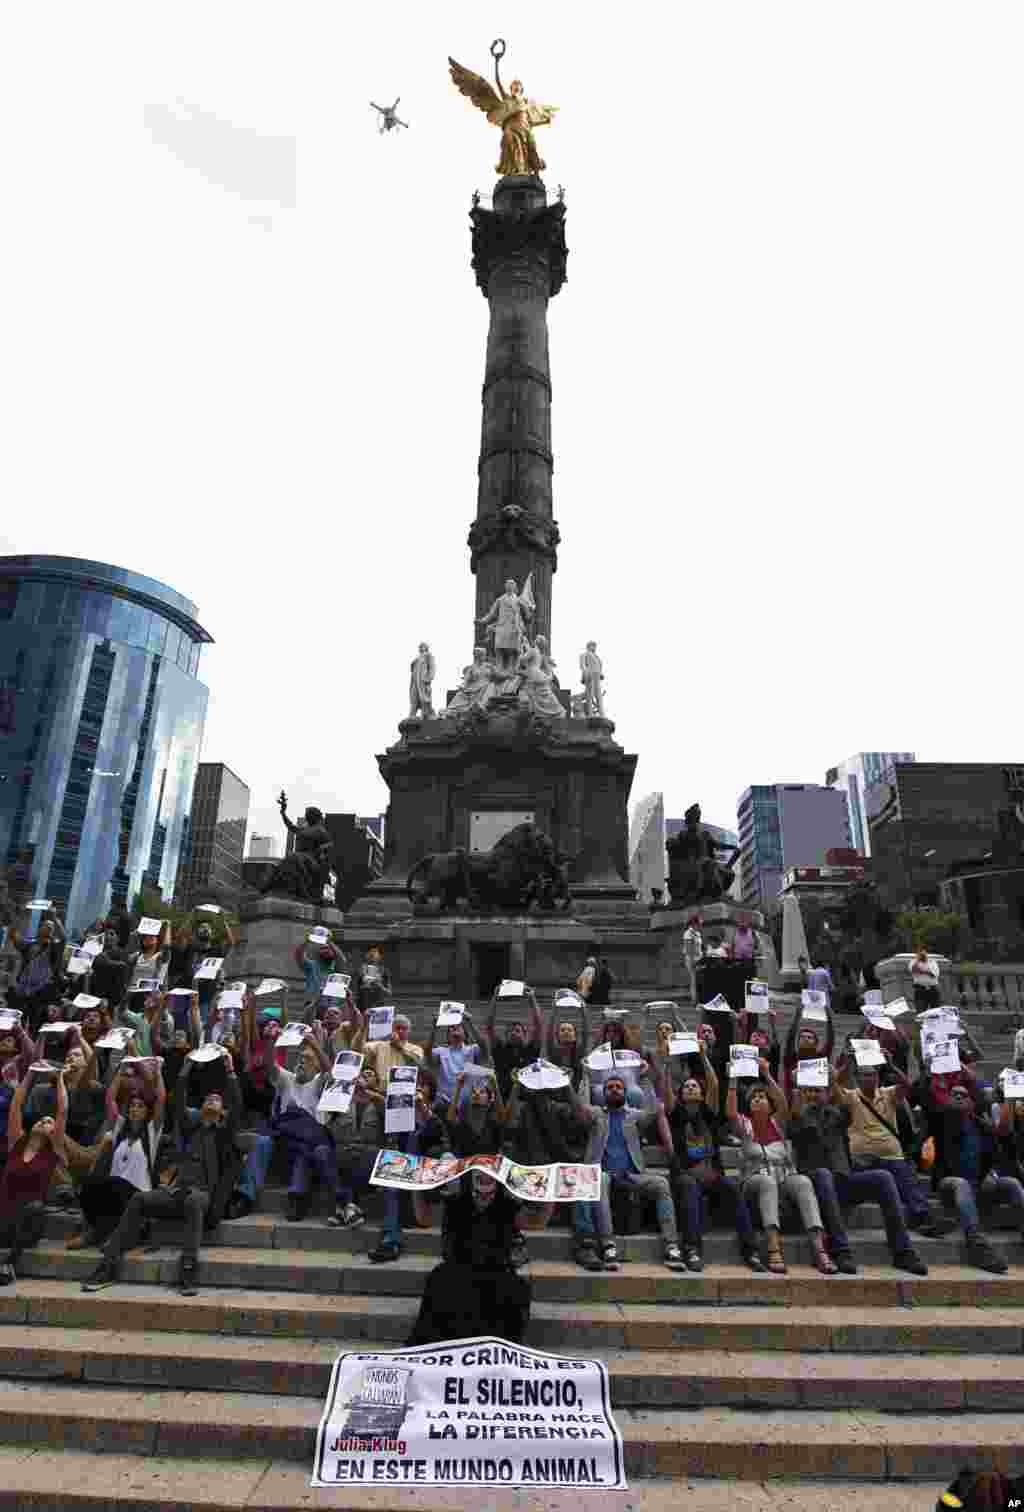 تظاهرات خبرنگار&zwnj;های مکزیکی&nbsp;برای جلب توجه به کشتن تعداد زیادی از همکار&zwnj;ان شان توسط باندهای قاچاقچی، در شهر مکزیکو سیتی. 